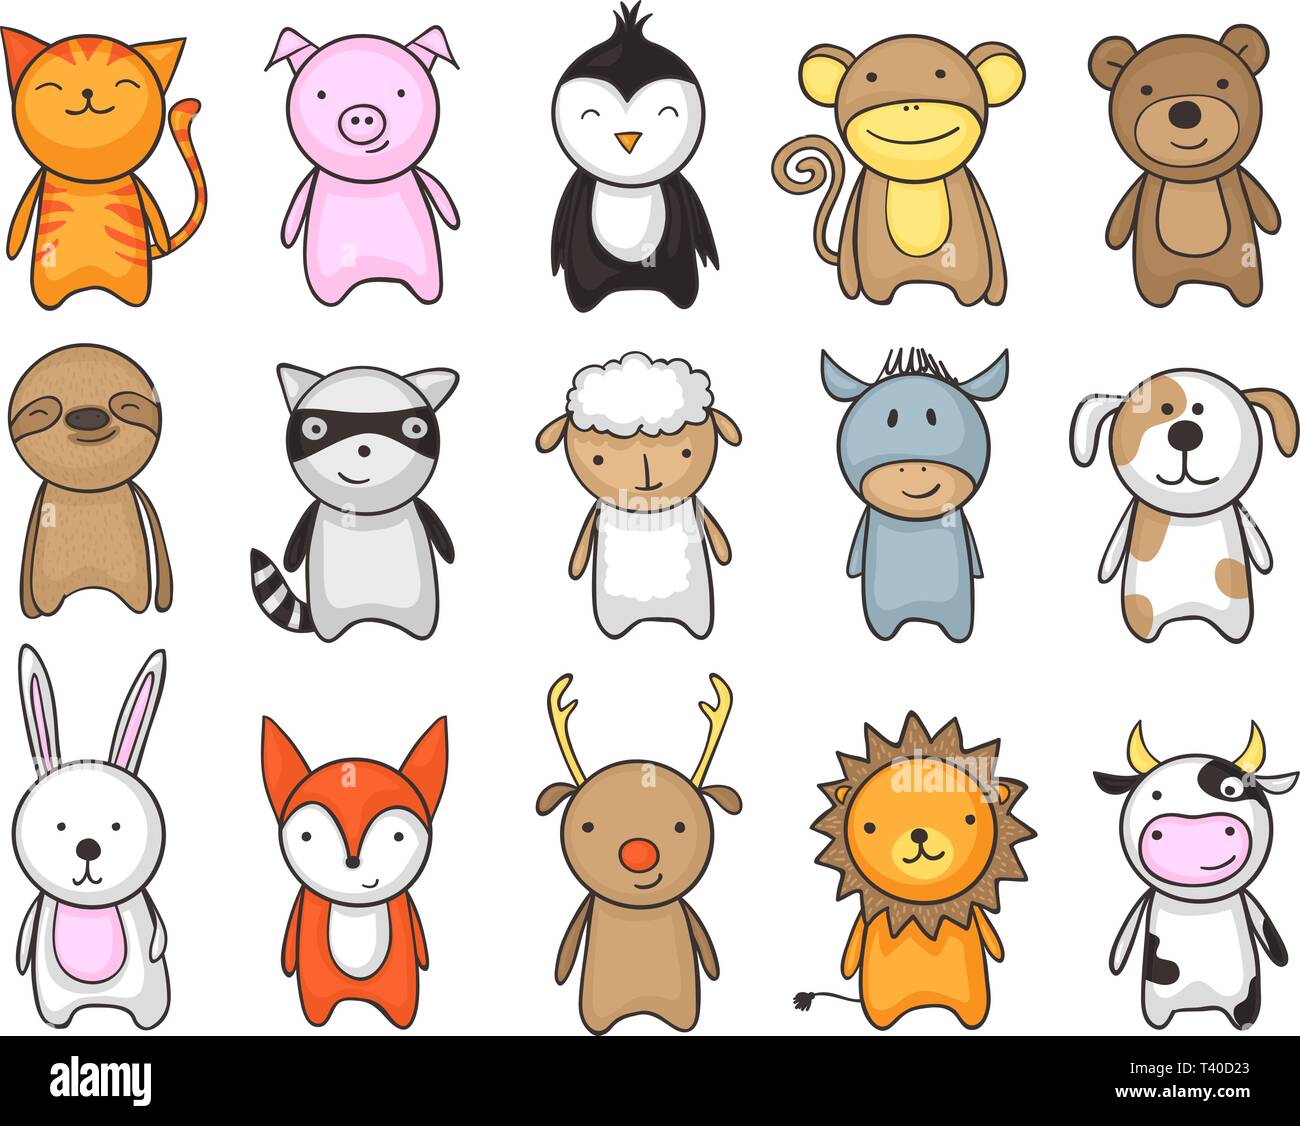 Einfach und kindisch Zeichnung der netten Spielzeug Tiere für Kinder Stock Vektor